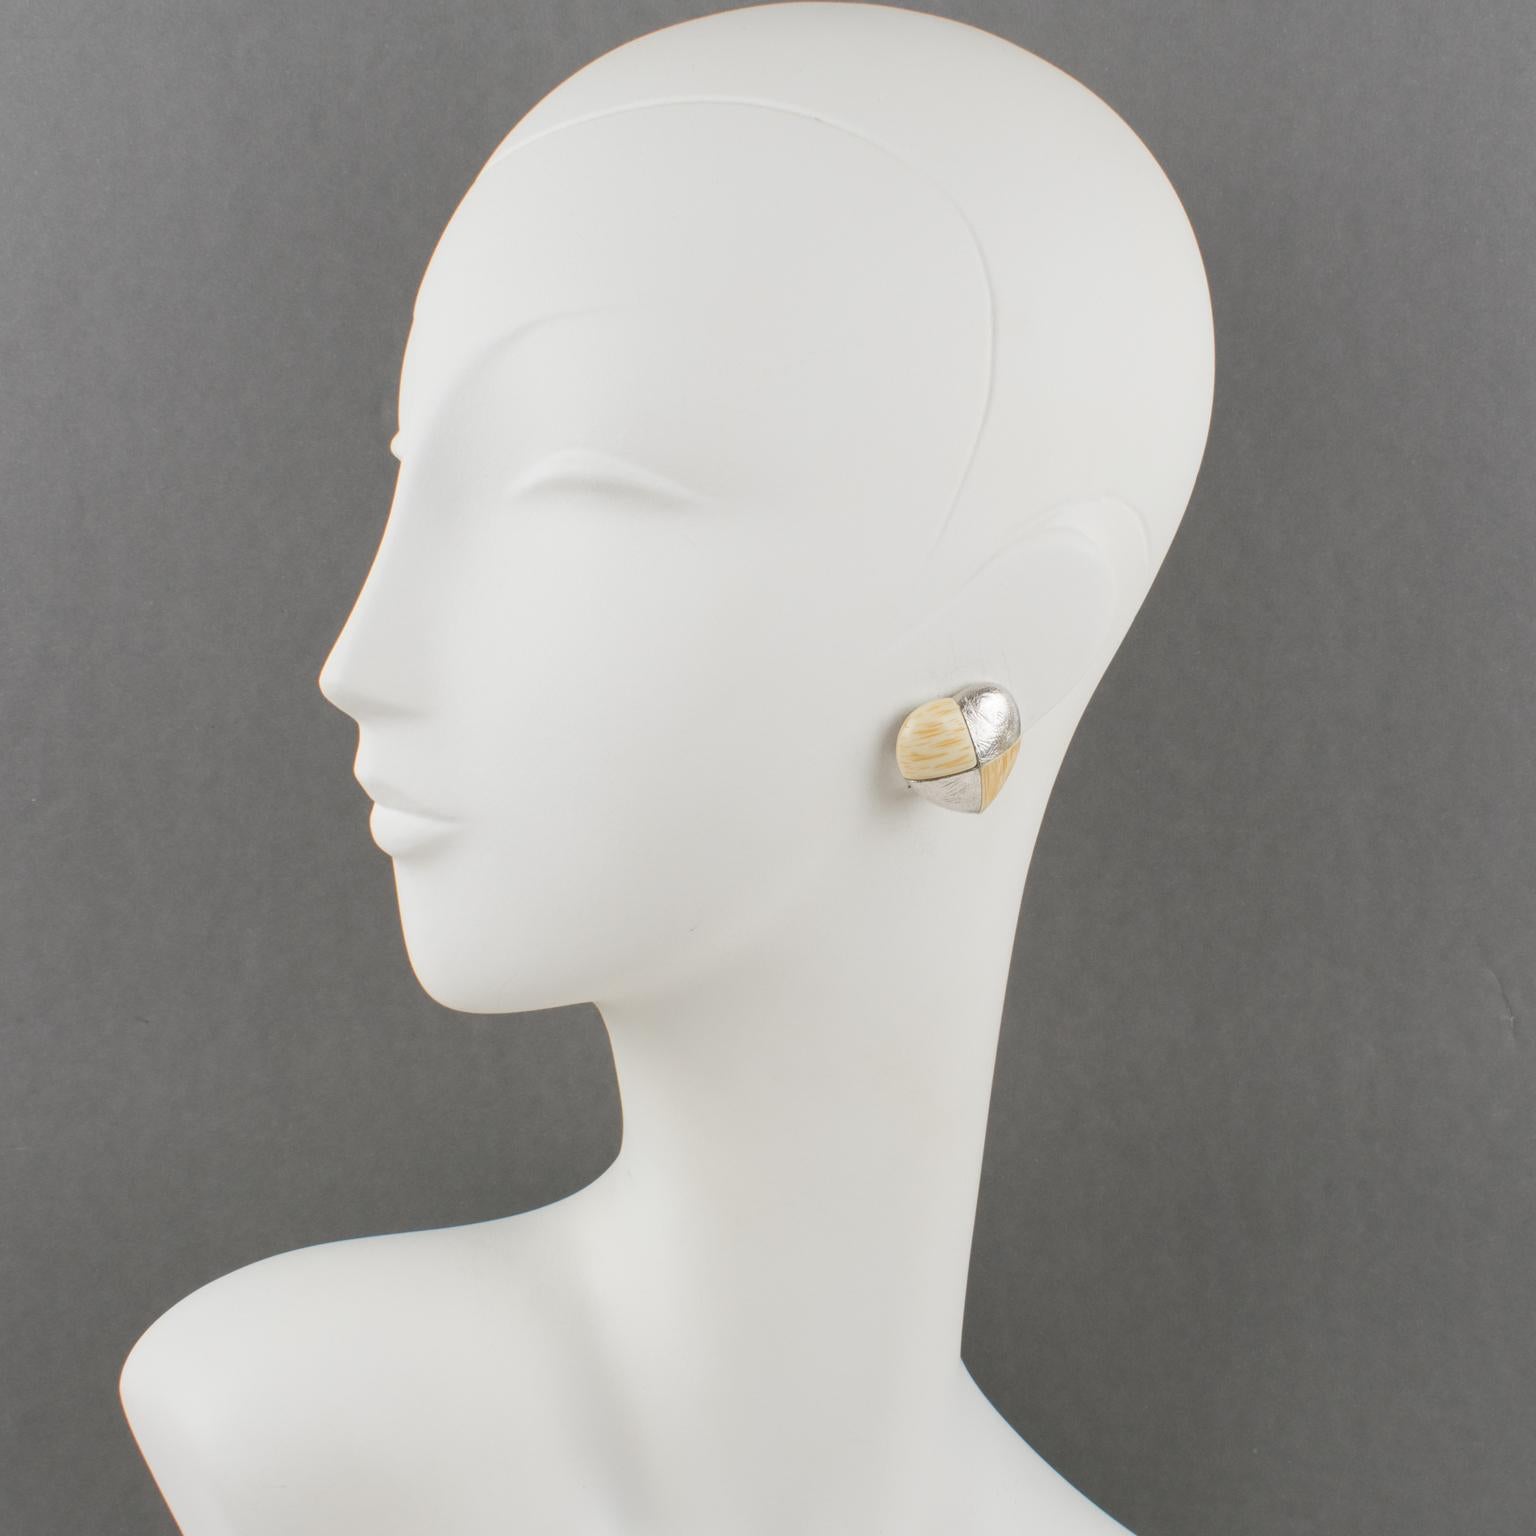 Diese eleganten, von Yves Saint Laurent Paris signierten Ohrringe zum Anstecken haben die Form eines romantischen Herzens aus strukturiertem, versilbertem Metall im Schachbrettmuster, kontrastiert mit cremefarbenen und beigen Kunstharzelementen mit